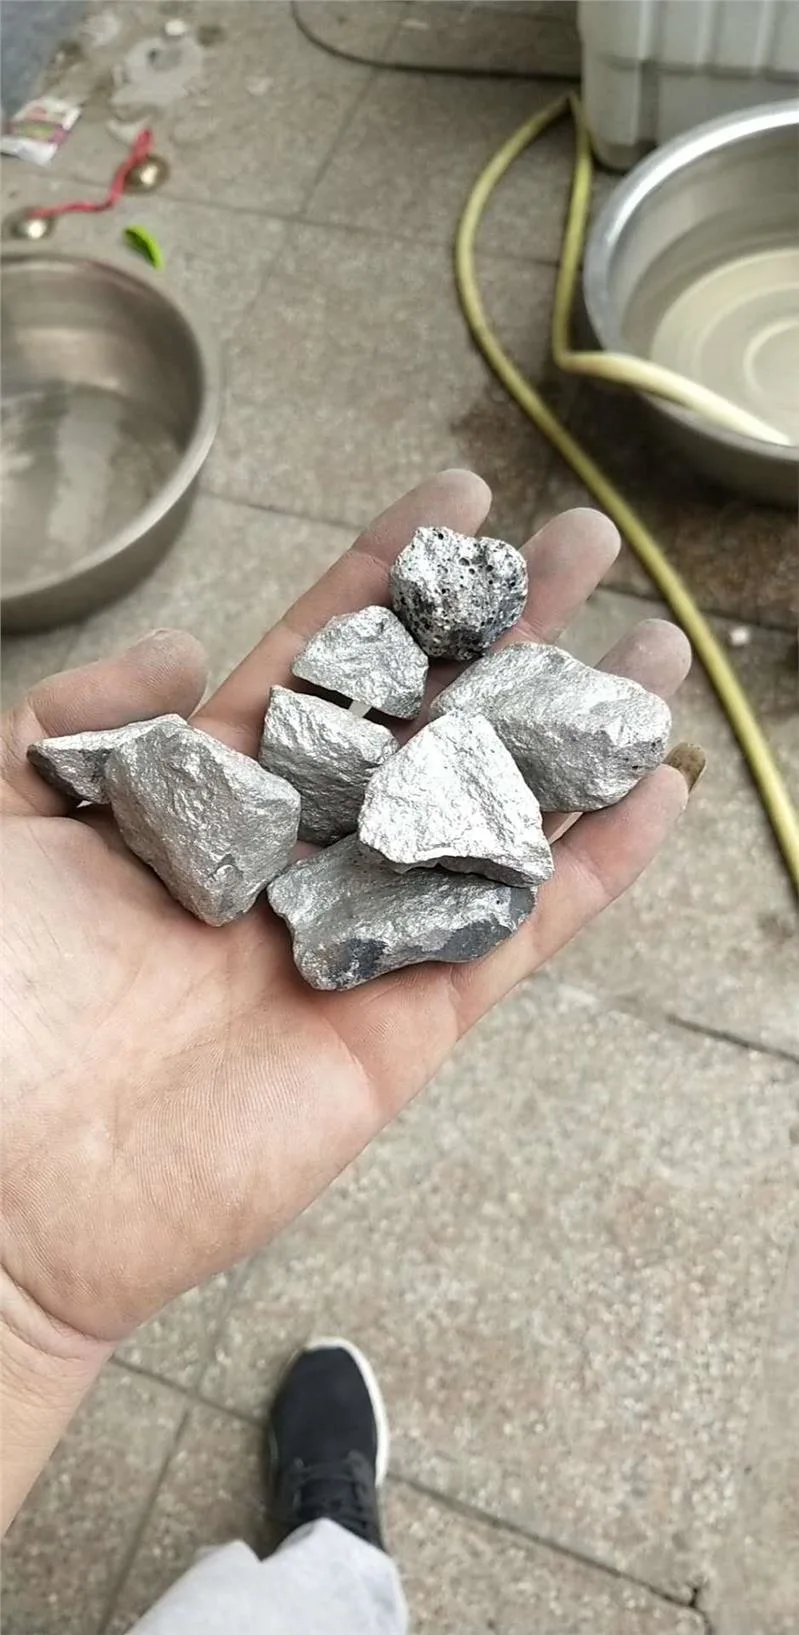 China Supplier Ferroniobium Price, Ferro Niobium